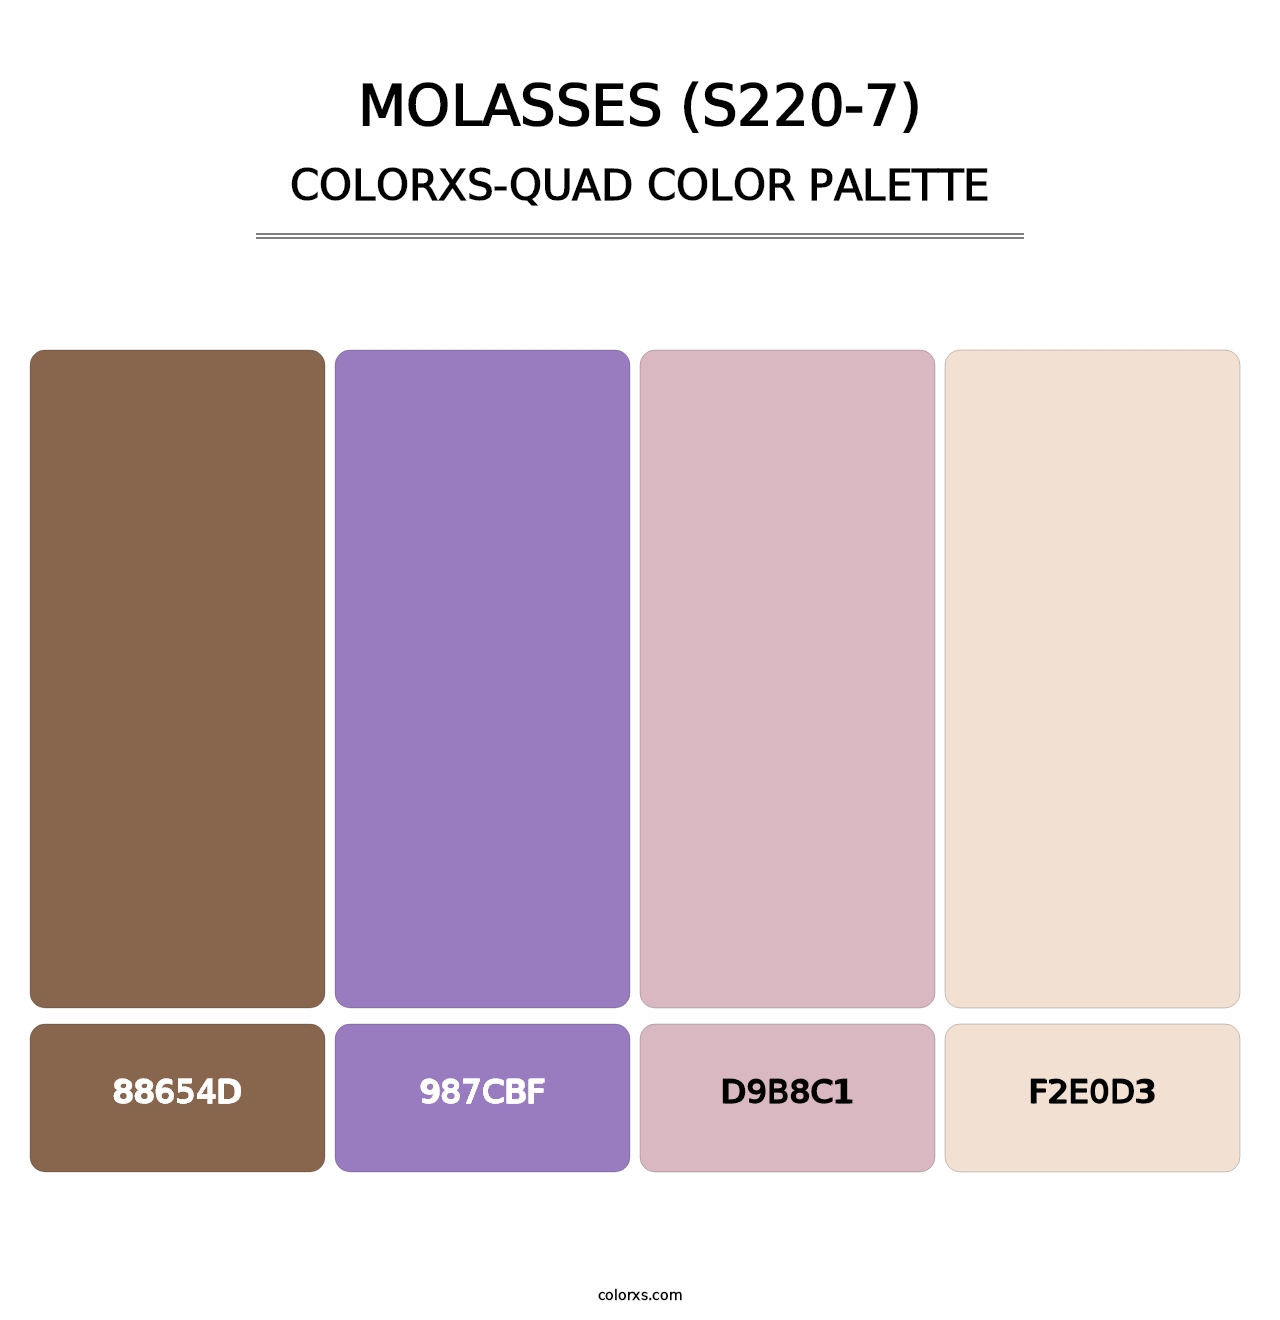 Molasses (S220-7) - Colorxs Quad Palette